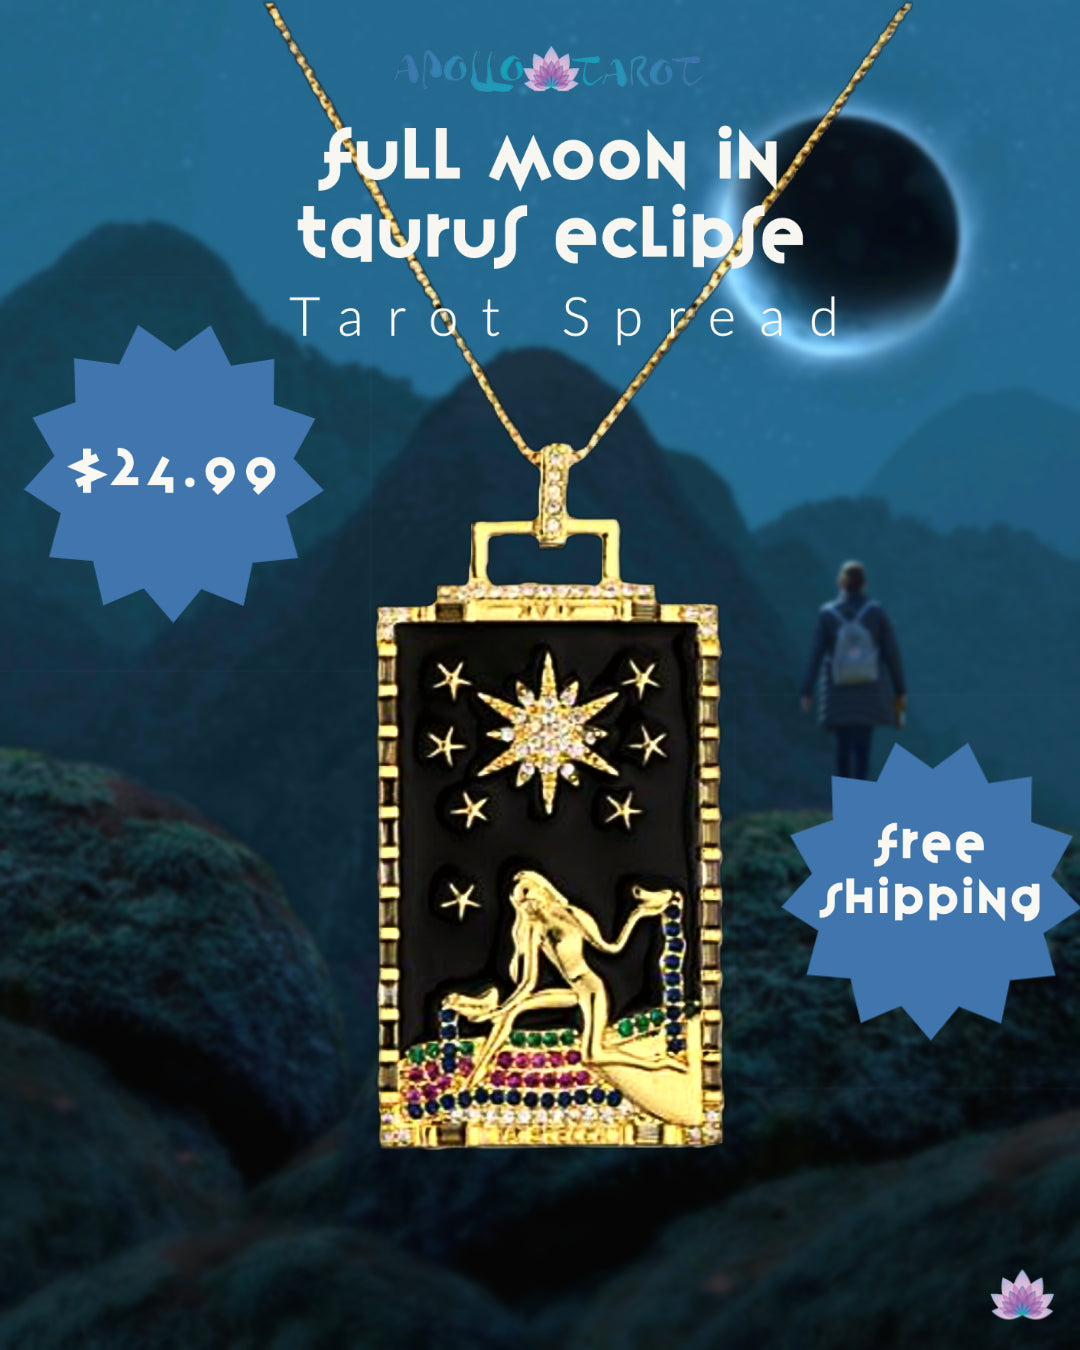 Full Moon In Taurus 2021 Eclipse Tarot Spread | Bijou Tarot Card Necklace Of The Star | Apollo Tarot Blog